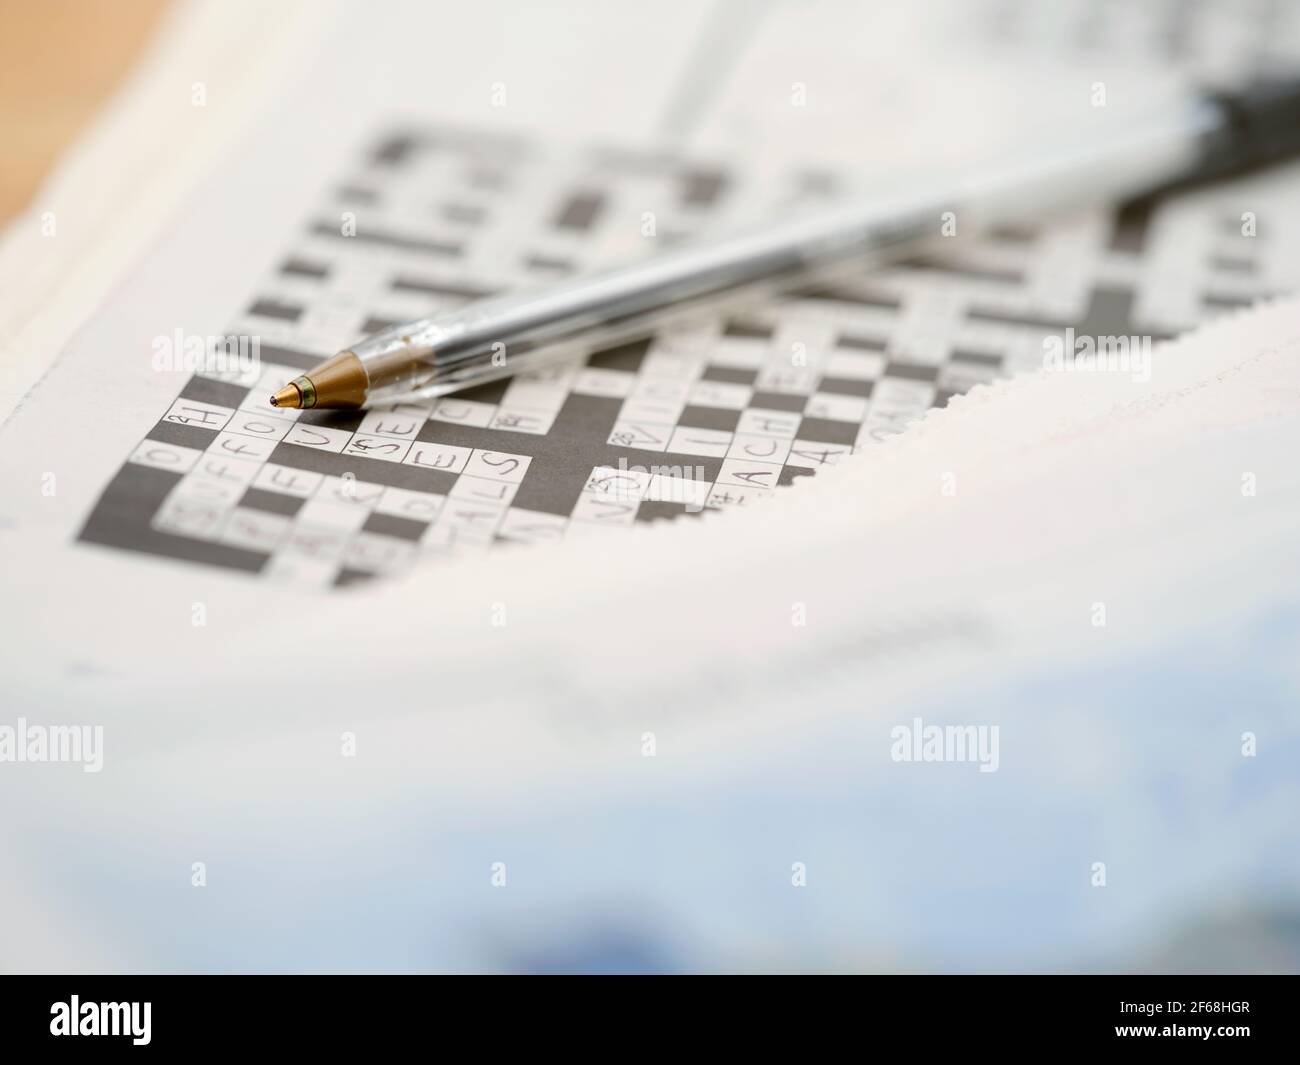 Ein Biro-Stift ruht auf einem teilweise ausgefüllten Kreuzworträtsel mit den Wörtern, die aus einem niedrigen Winkel betrachtet werden. Stockfoto